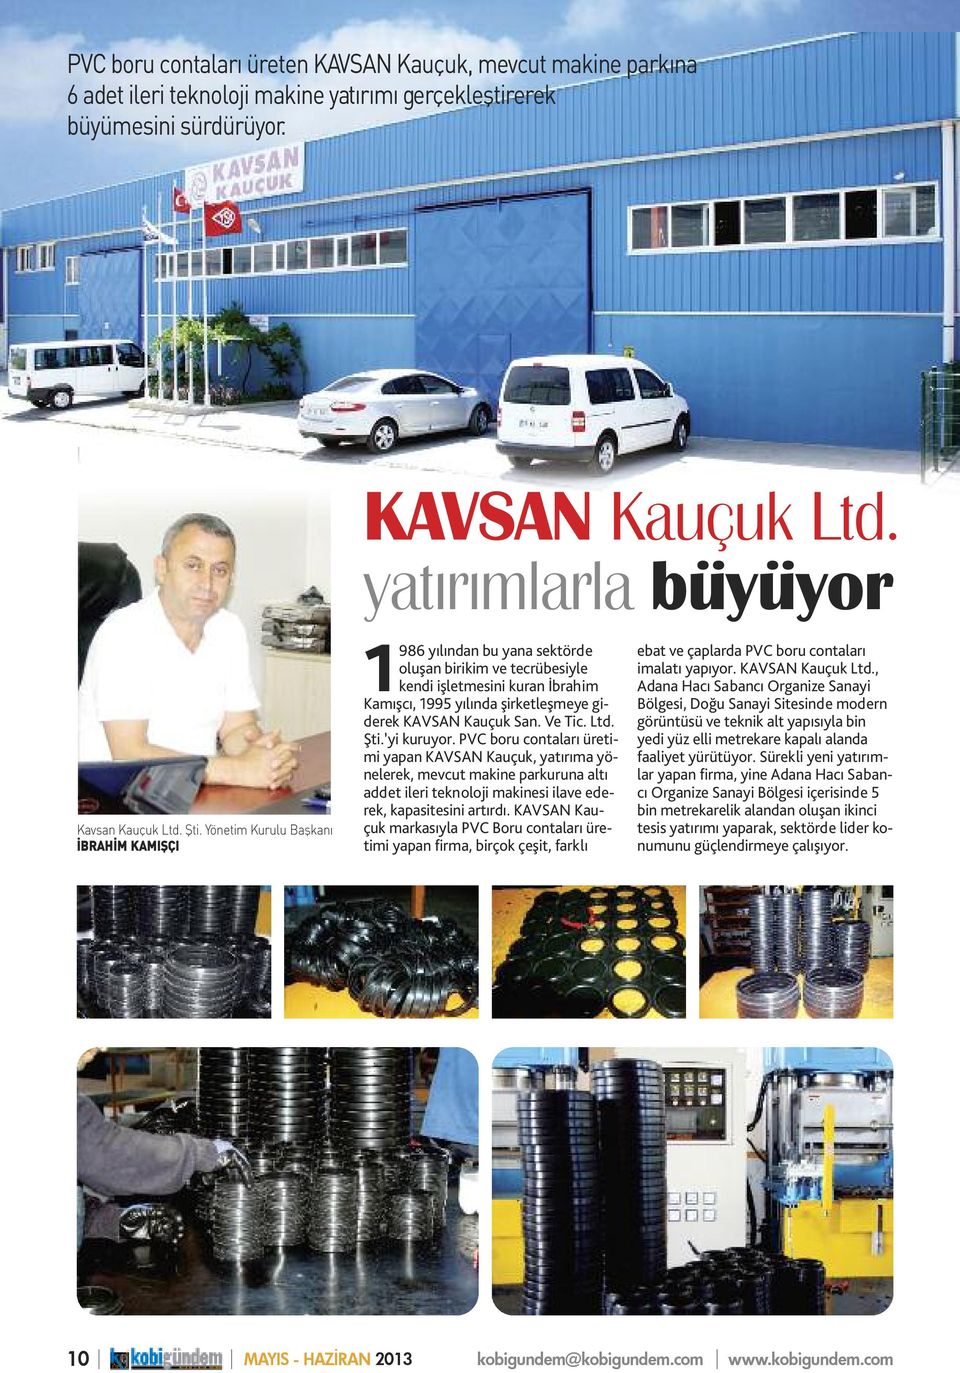 Ve Tic. Ltd. Şti. yi kuruyor. PVC boru contaları üretimi yapan KAVSAN Kauçuk, yatırıma yönelerek, mevcut makine parkuruna altı addet ileri teknoloji makinesi ilave ederek, kapasitesini artırdı.